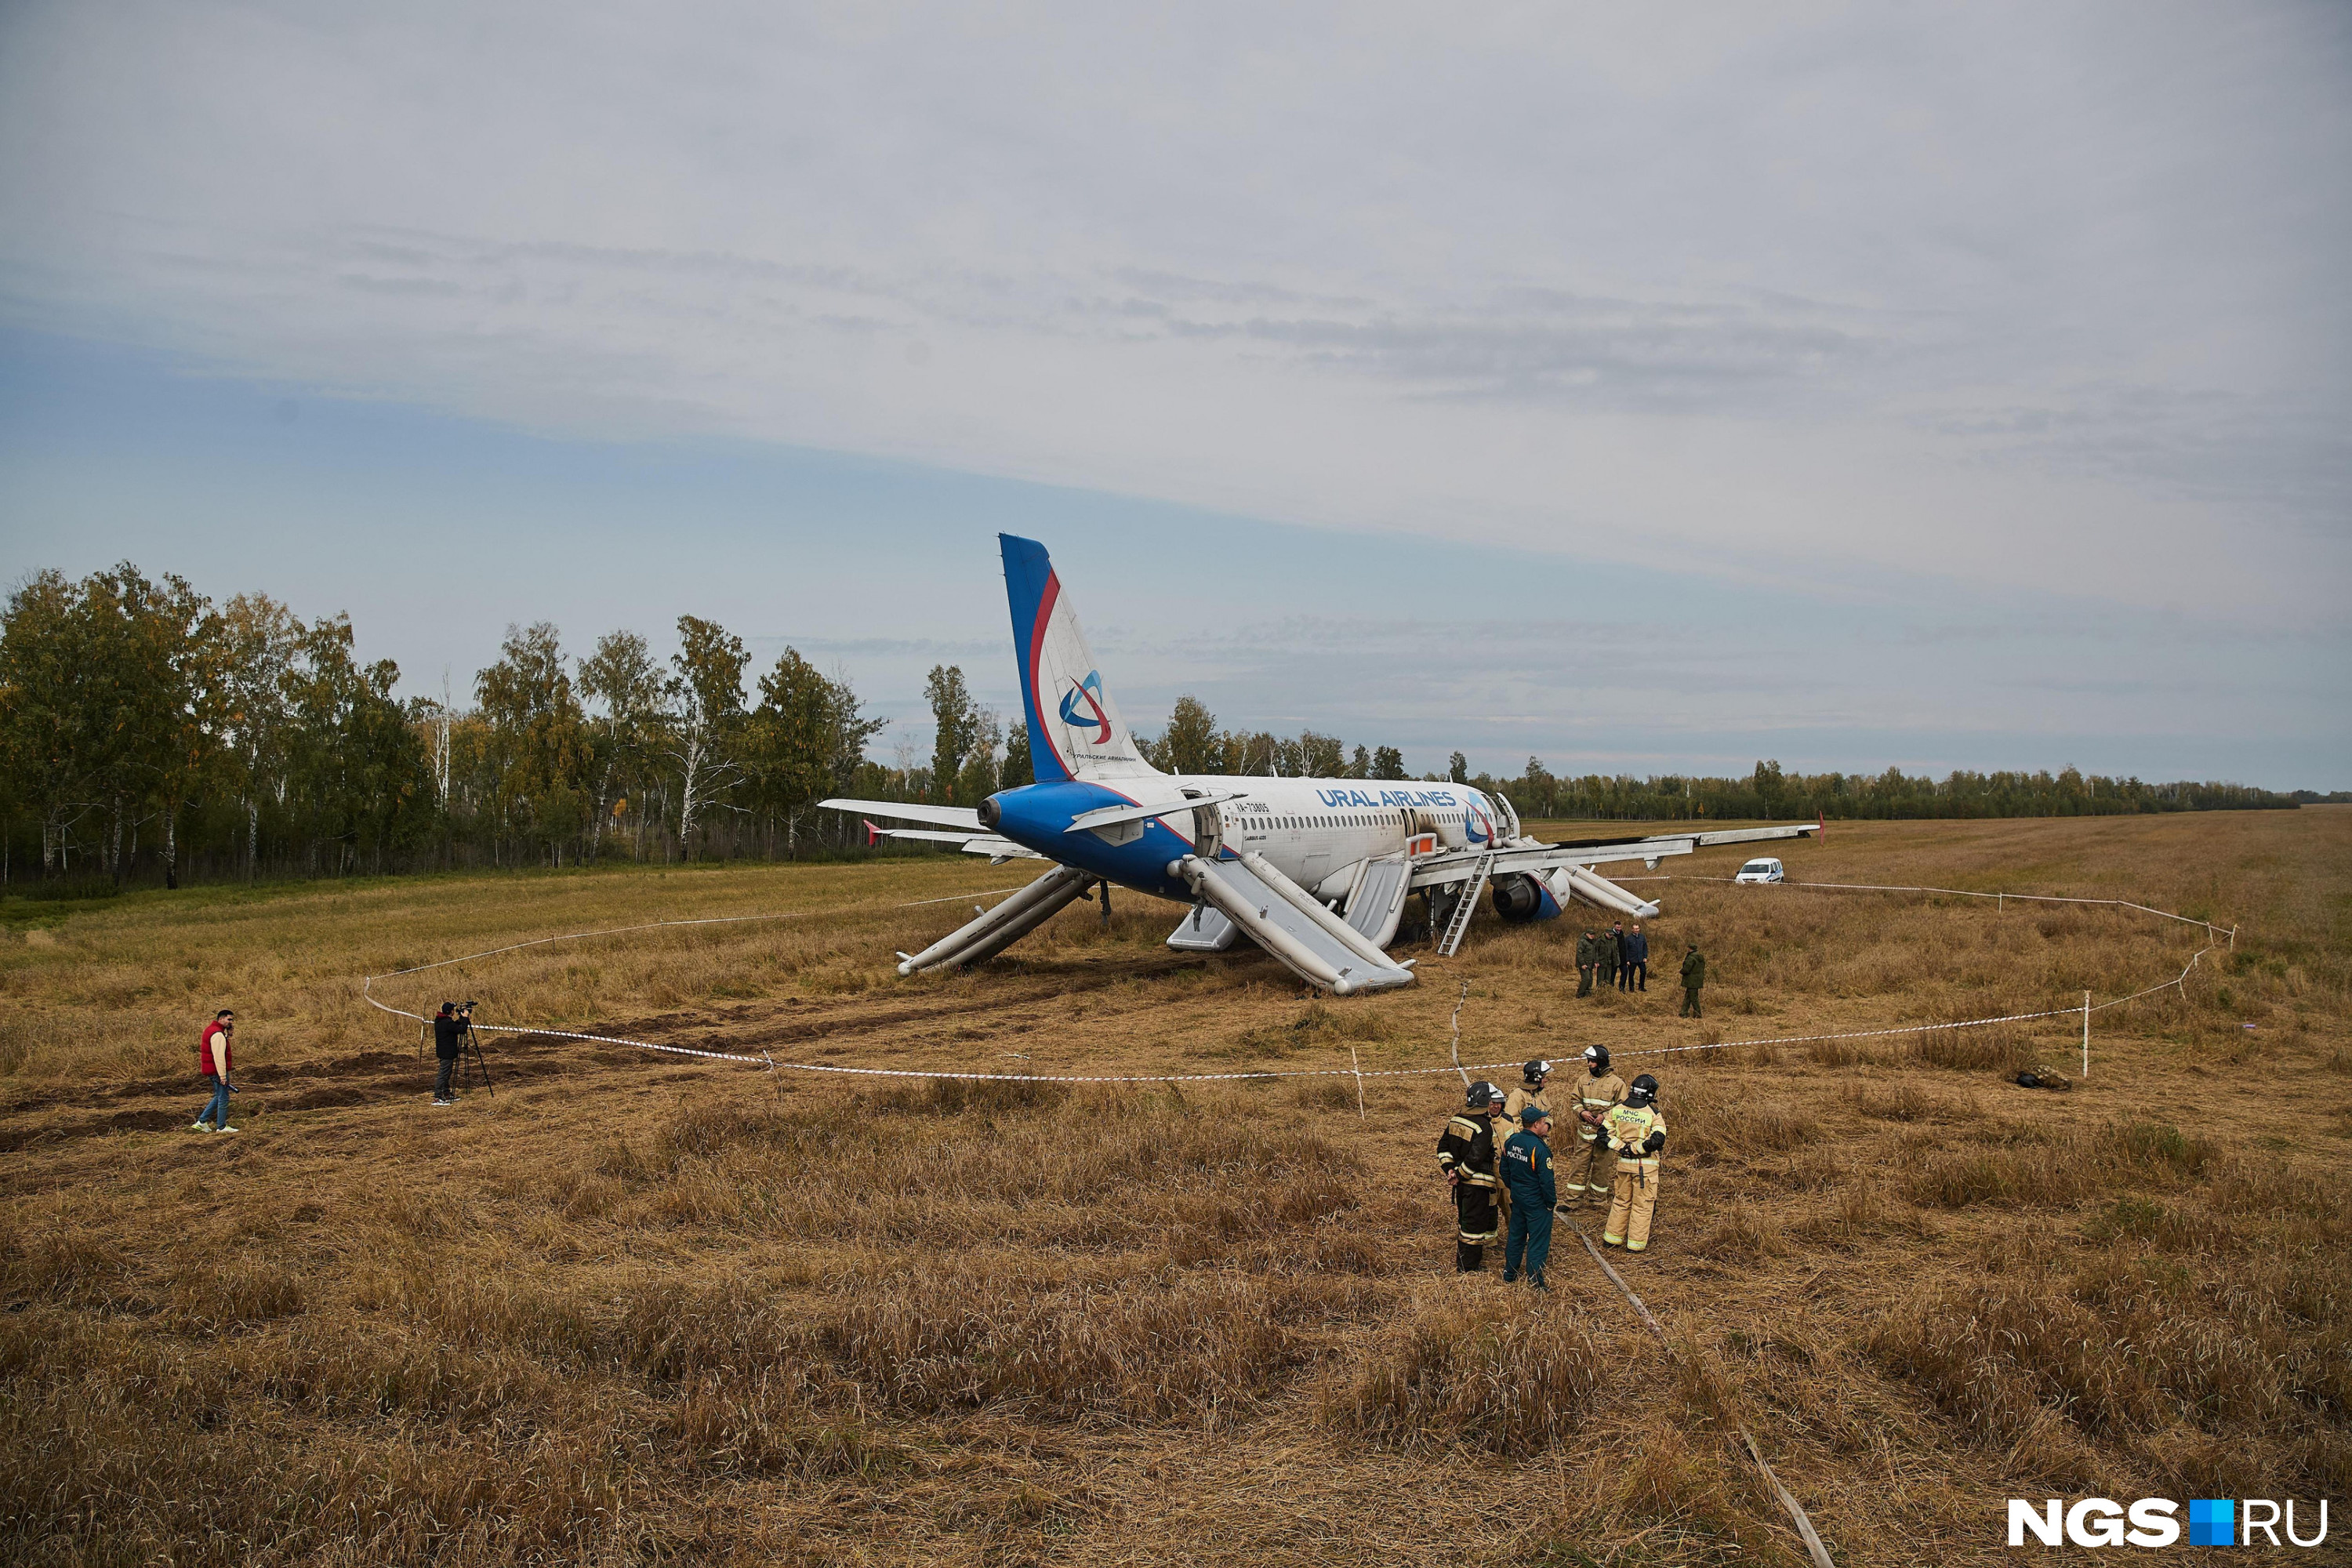 Сегодня руководство авиакомпании решает, что делать с самолётом, застрявшим в новосибирском поле